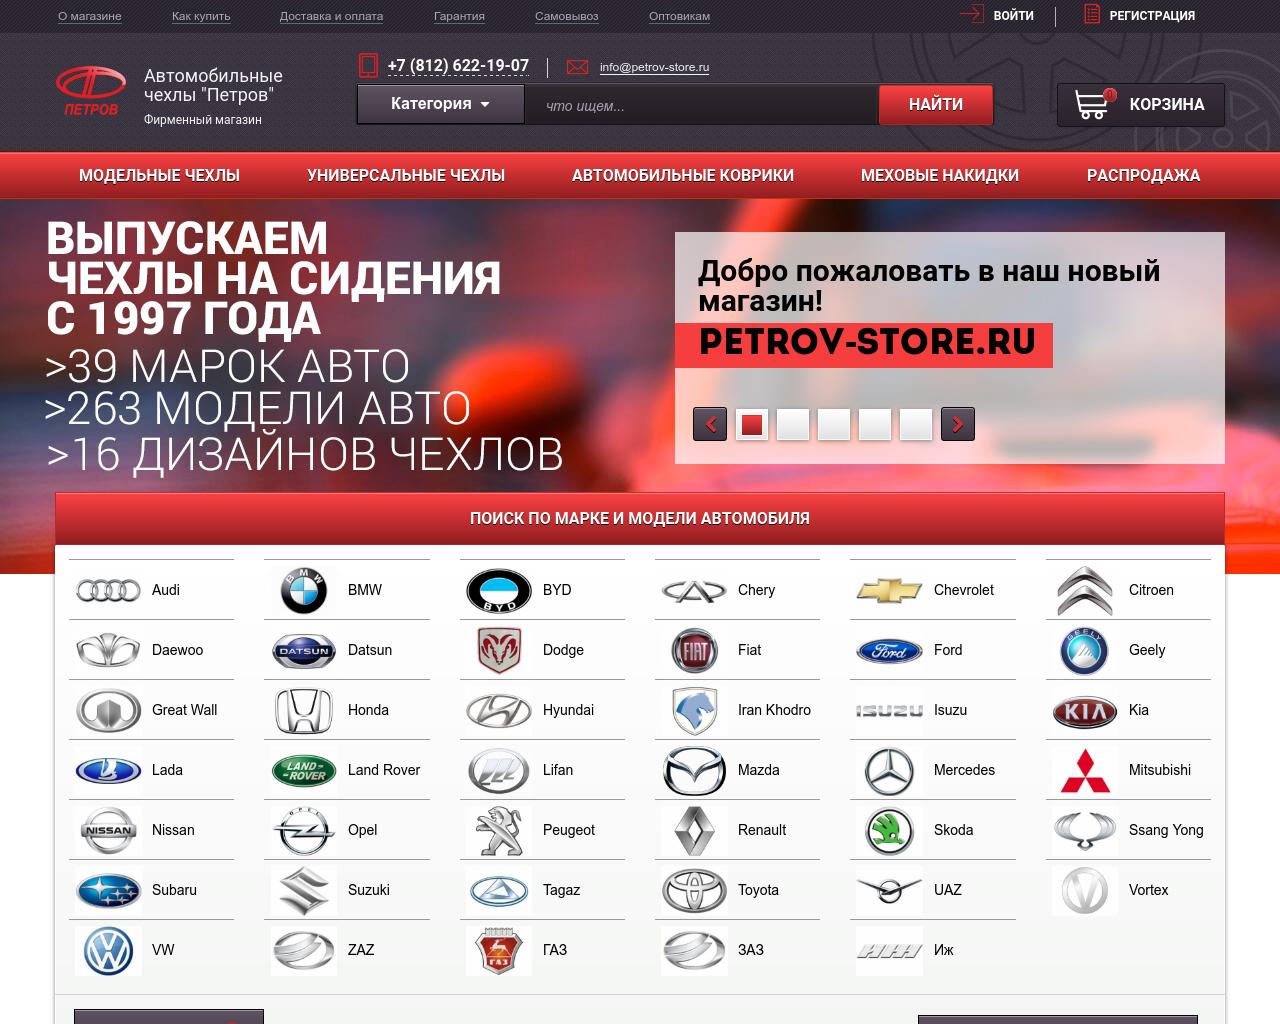 Изображение сайта petrov-store.ru в разрешении 1280x1024